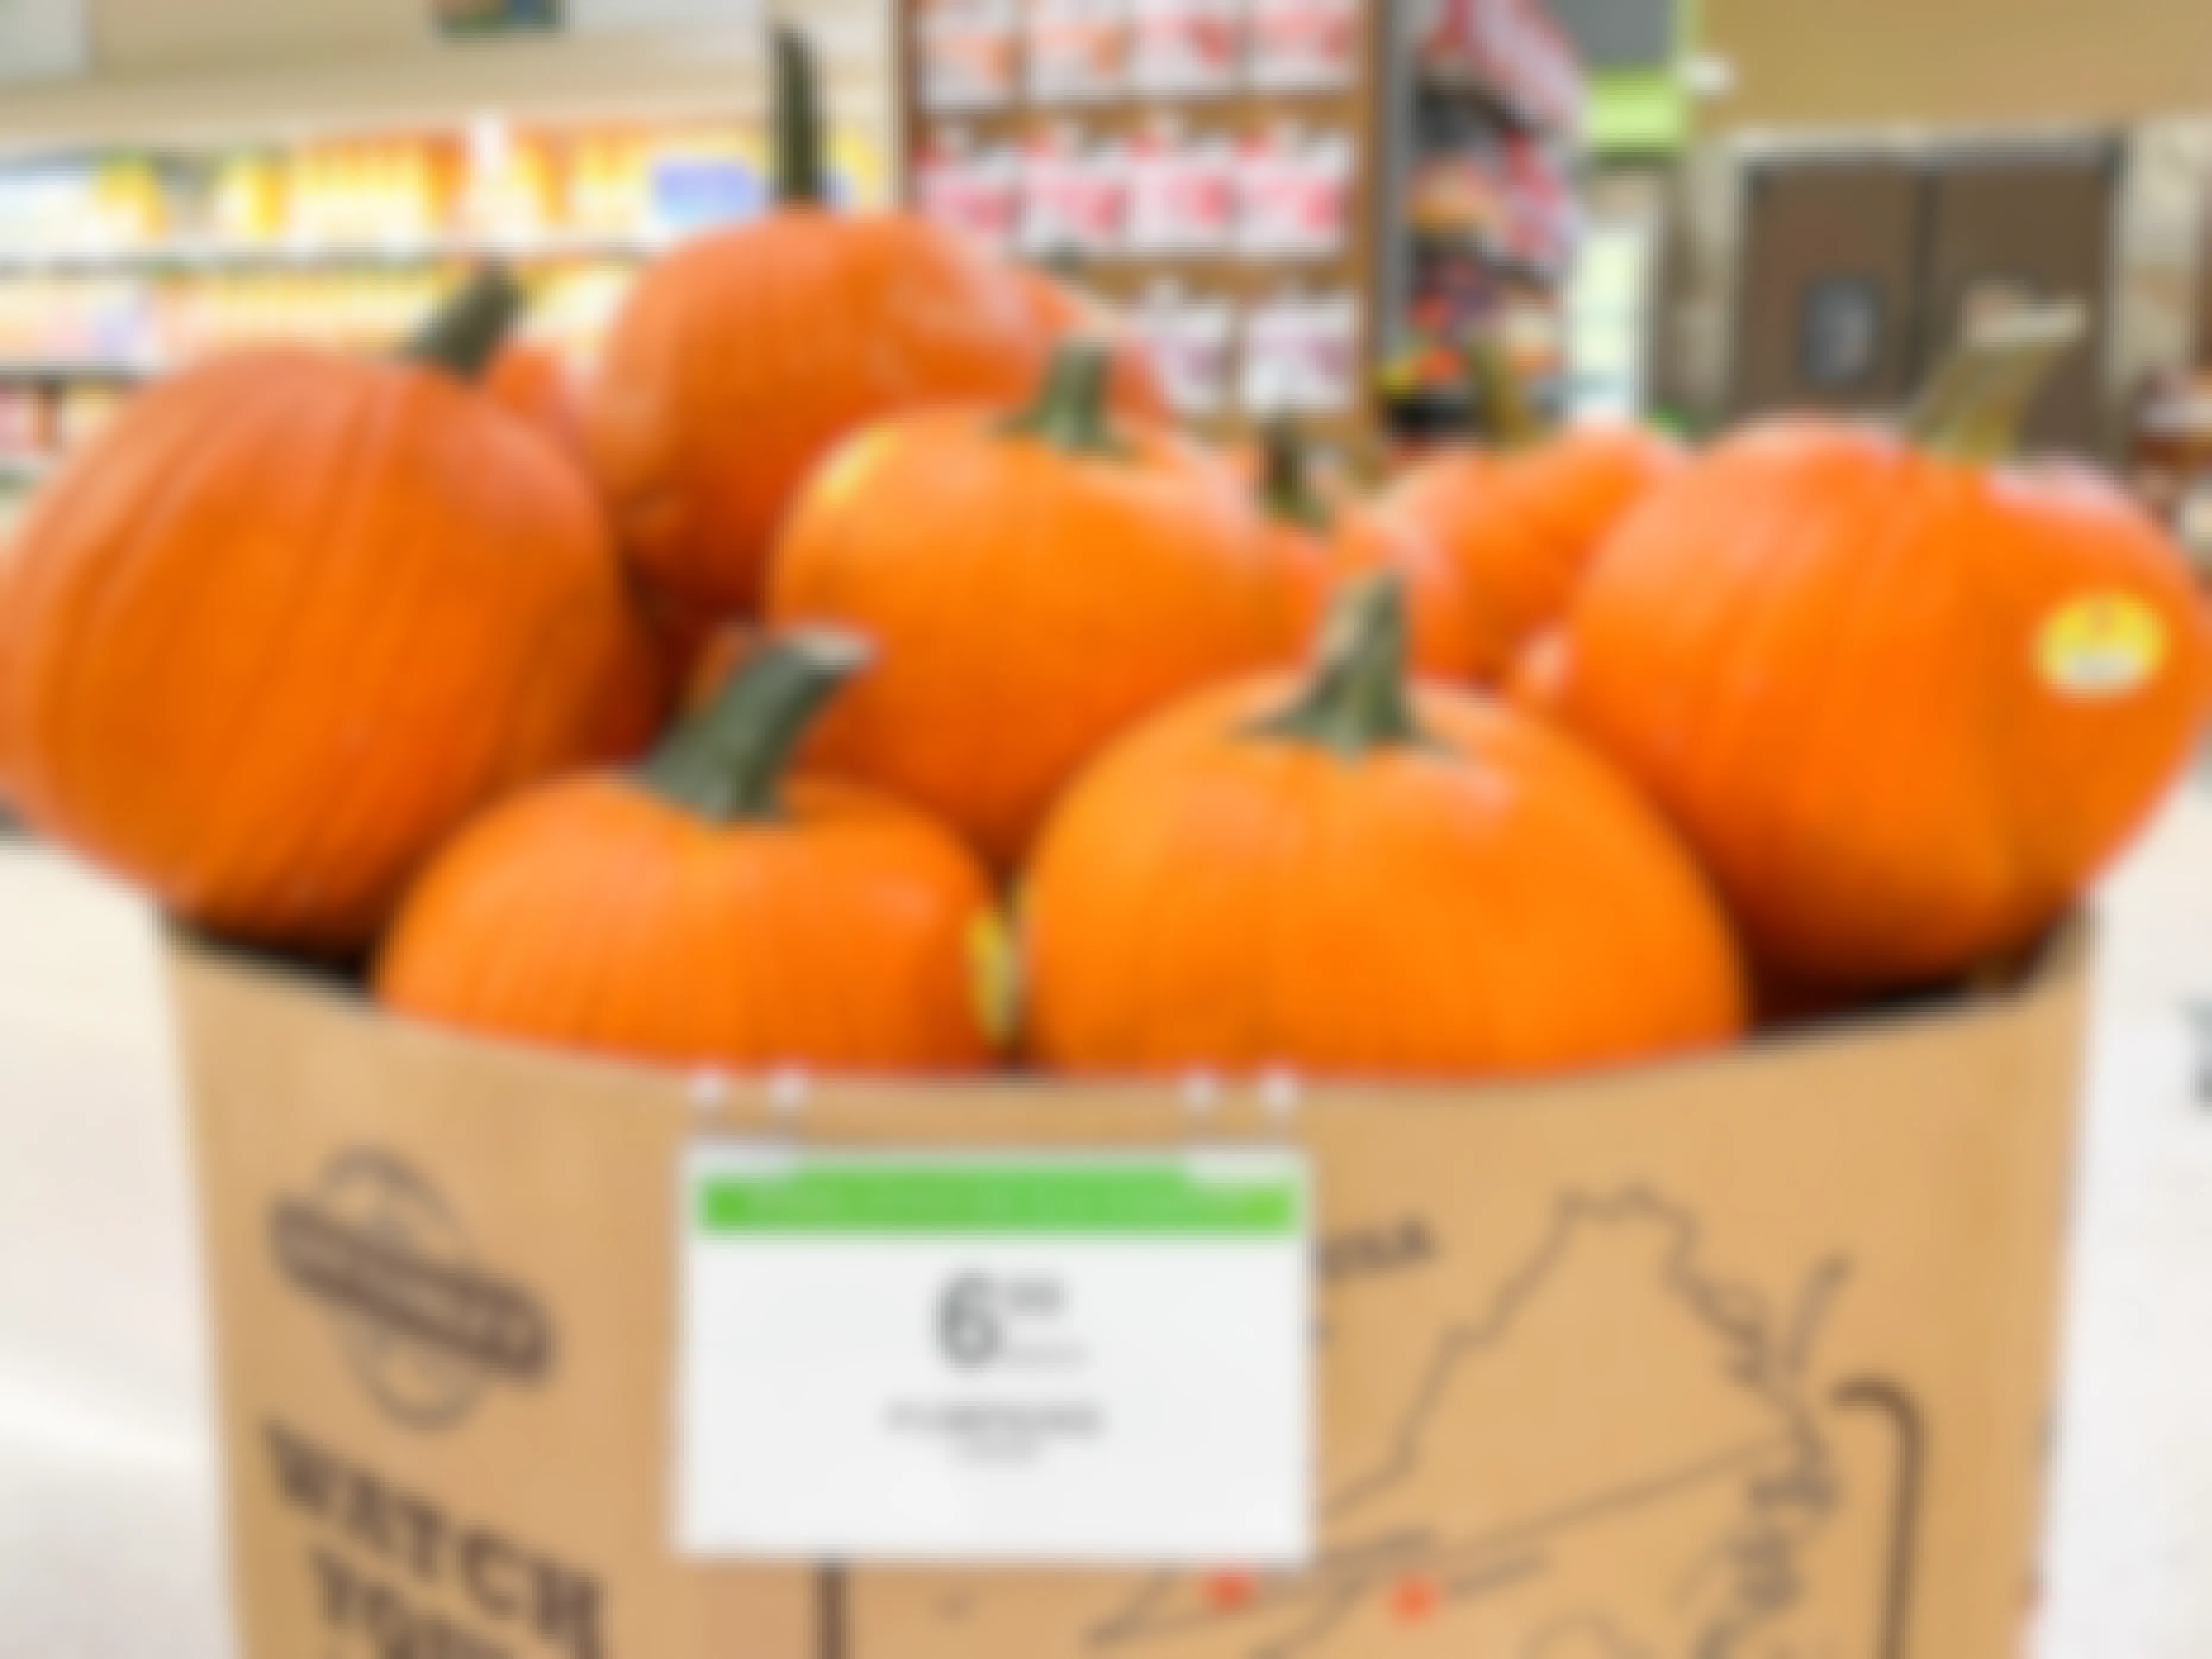 A large box of pumpkins for sale inside Publix